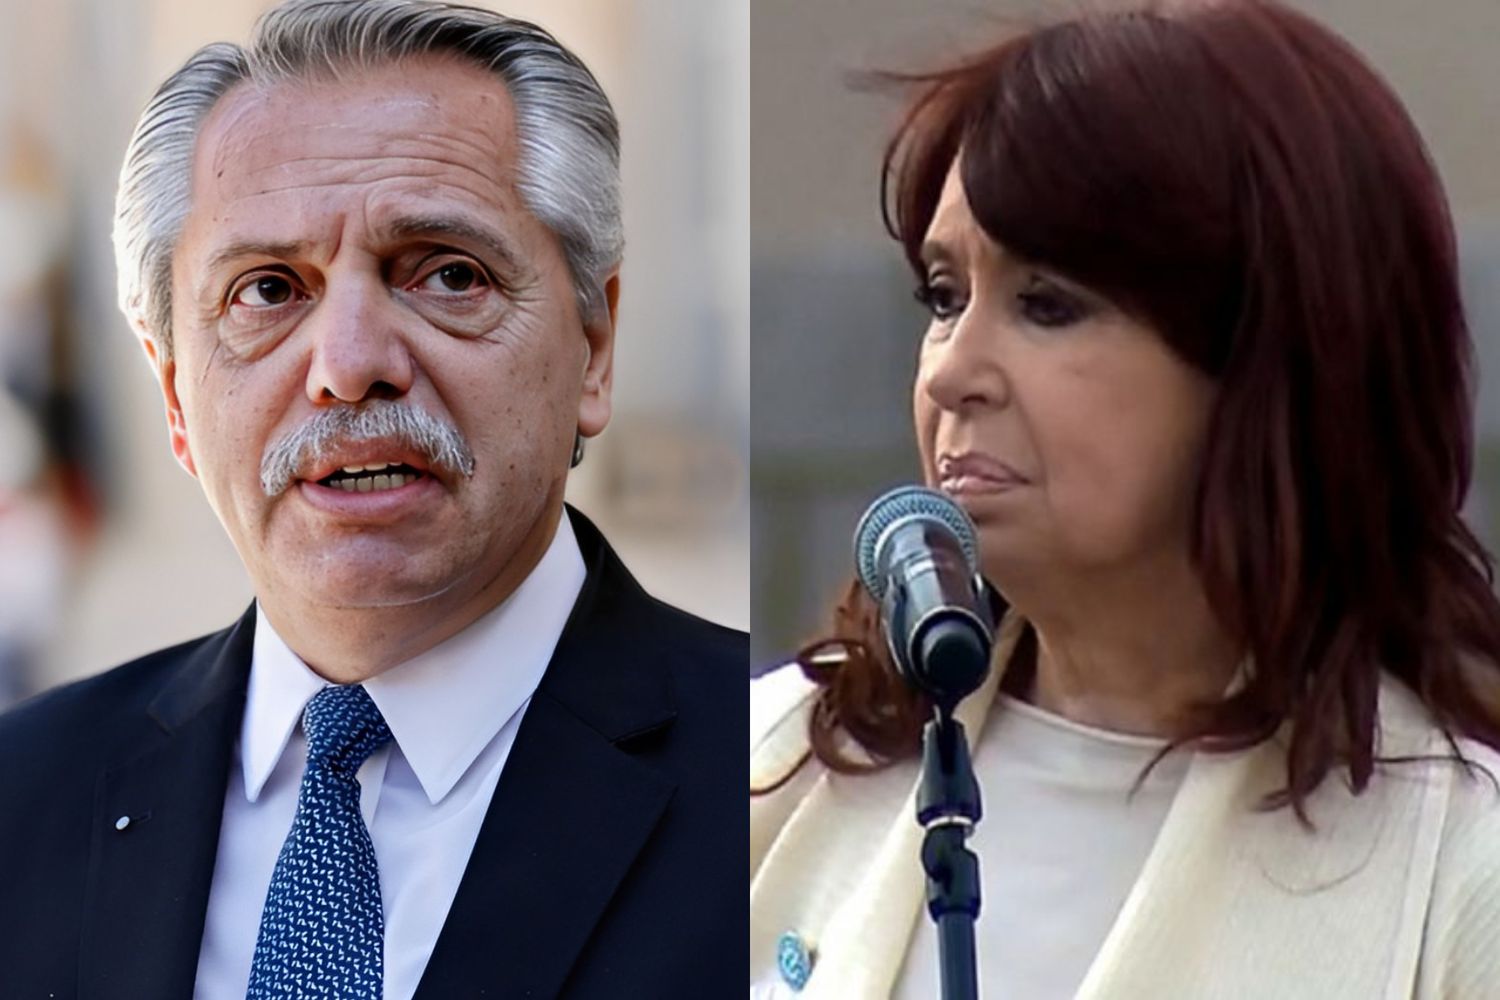 "Nunca más": Alberto Fernández y Cristina Kirchner repudiaron el intento de golpe de estado en Brasil